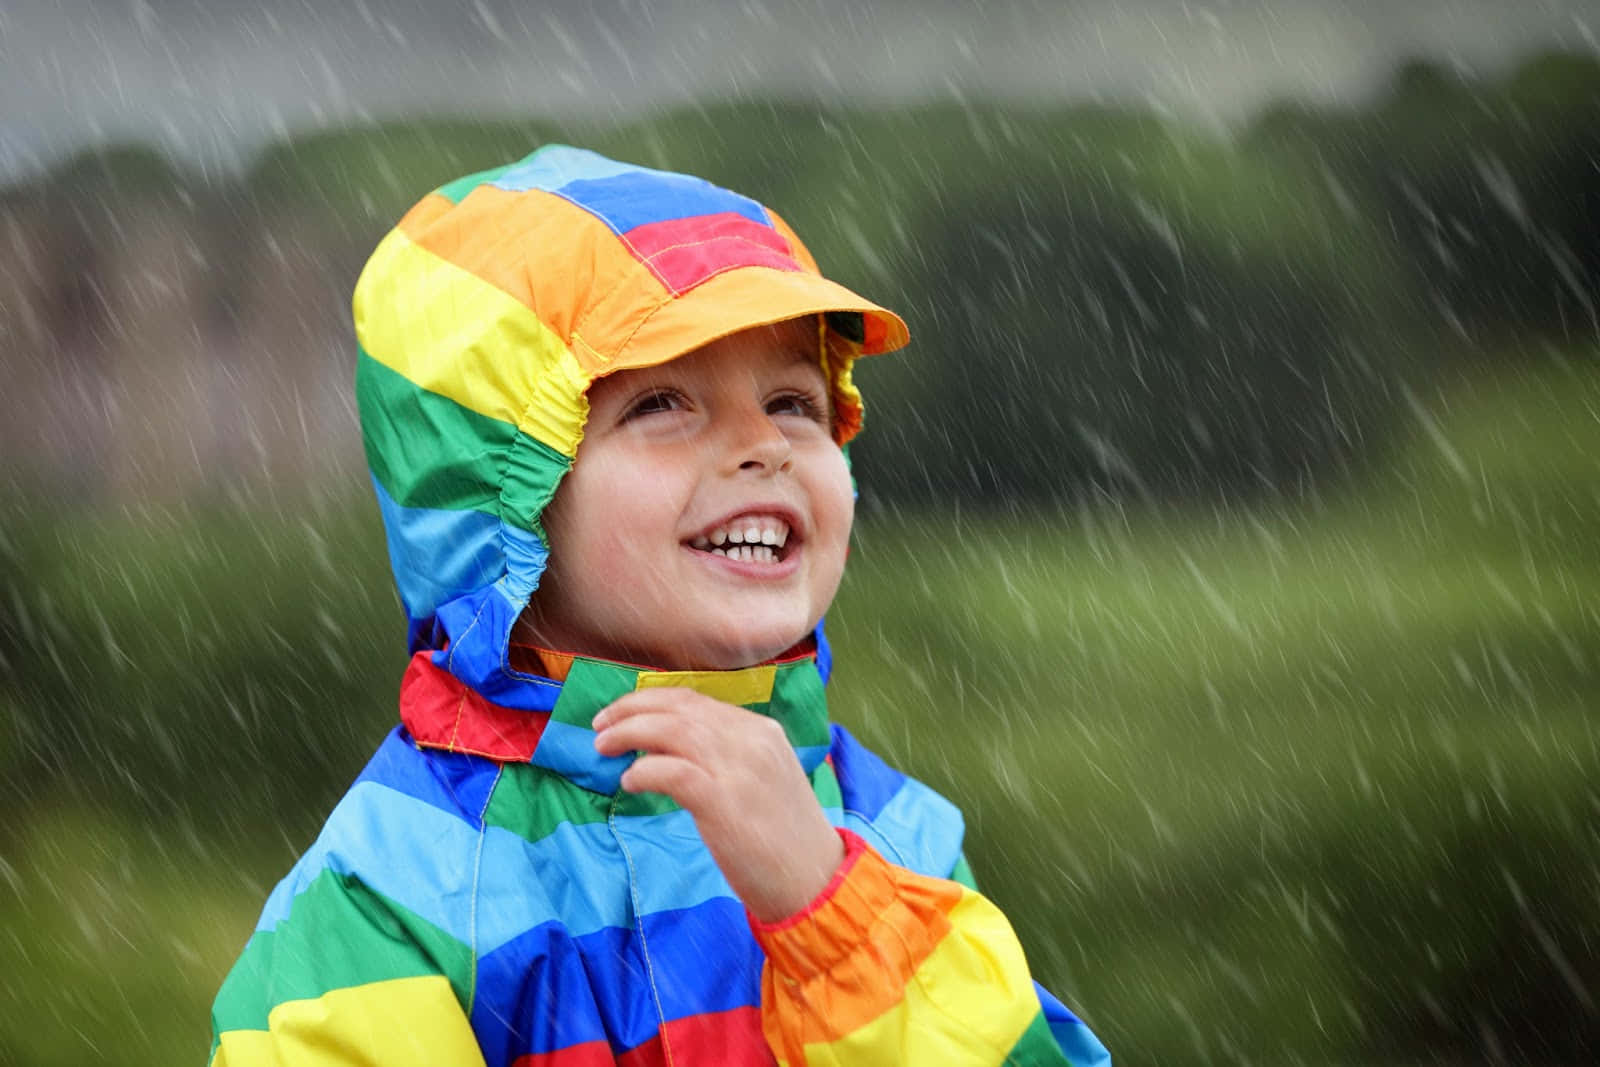 Billedeaf Et Barn Iført En Farverig Frakke På En Regnvejrsdag.